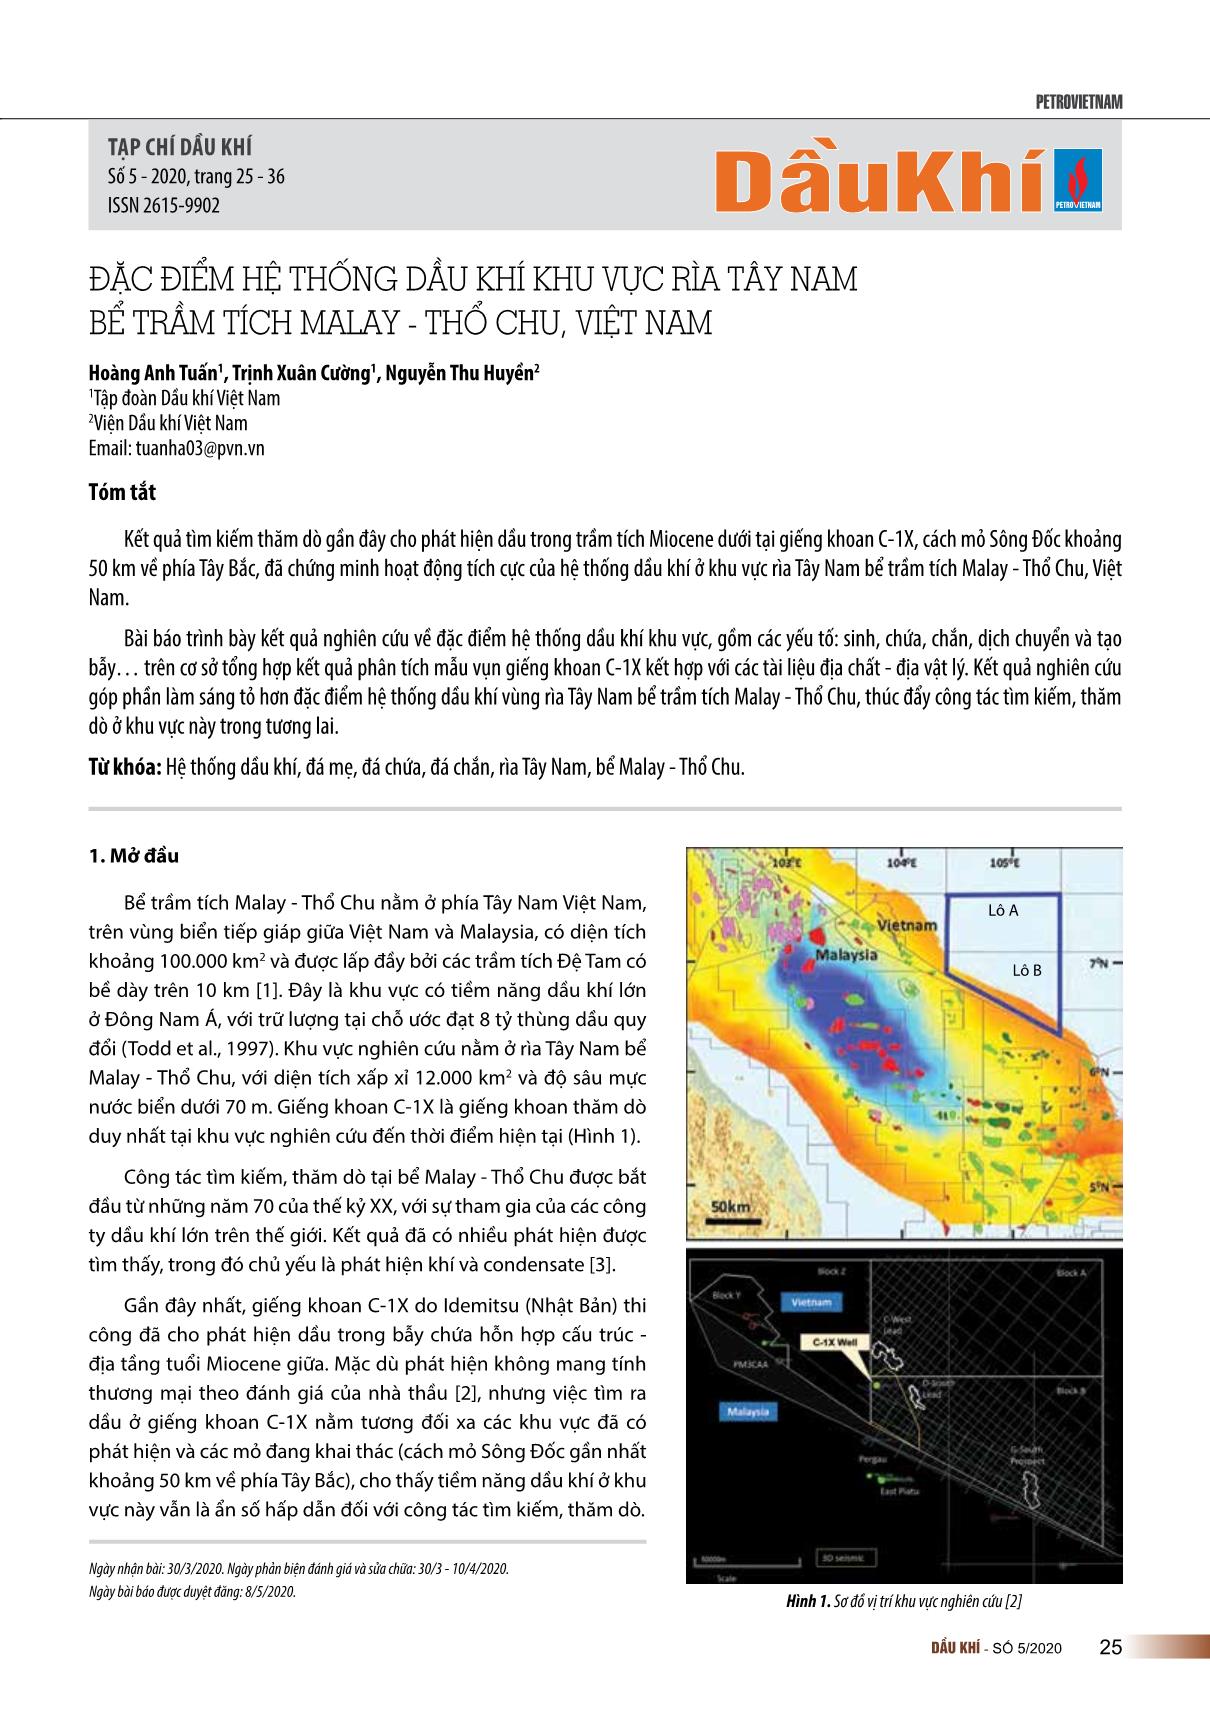 Đặc điểm hệ thống dầu khí khu vực rìa Tây Nam bể trầm tích Malay - Thổ chu, Việt Nam trang 1